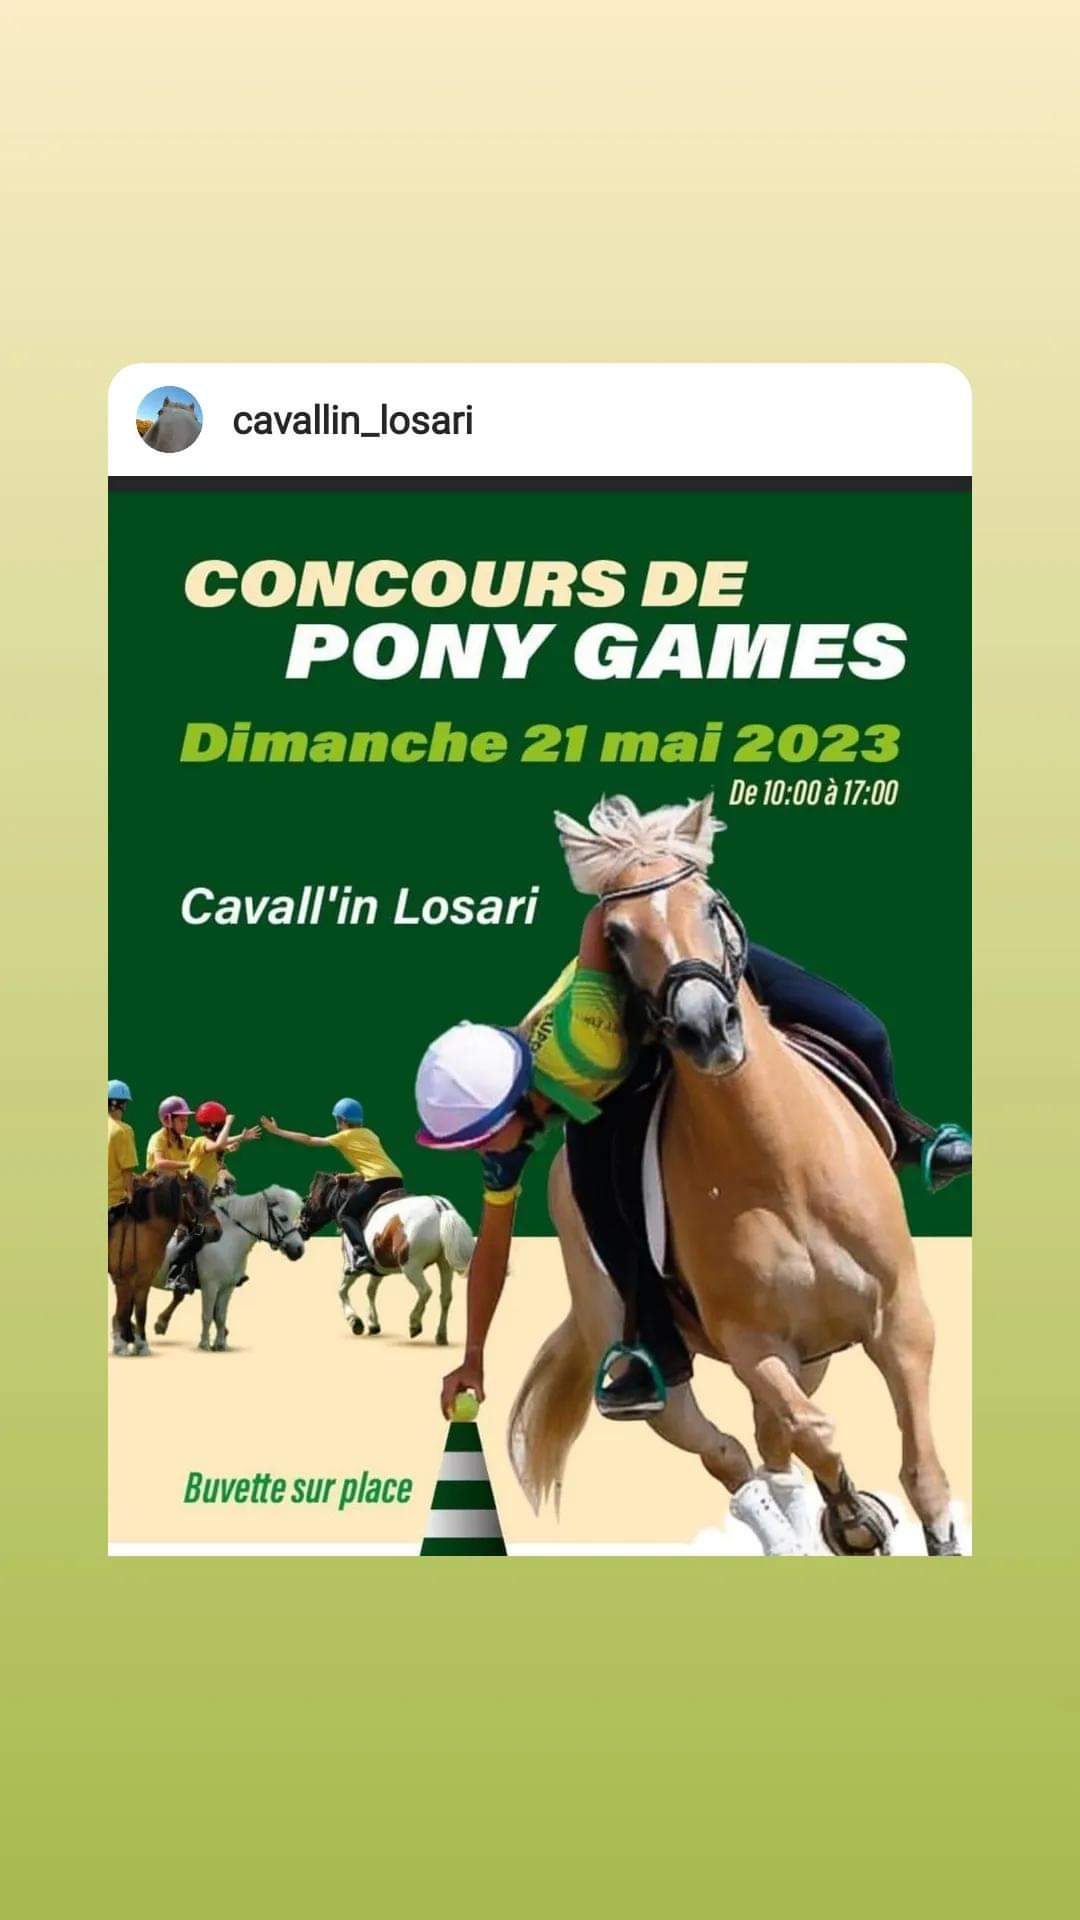 Un Concours Equestre de Pony Games De l’Association Cavall’in Losari ce dimanche 